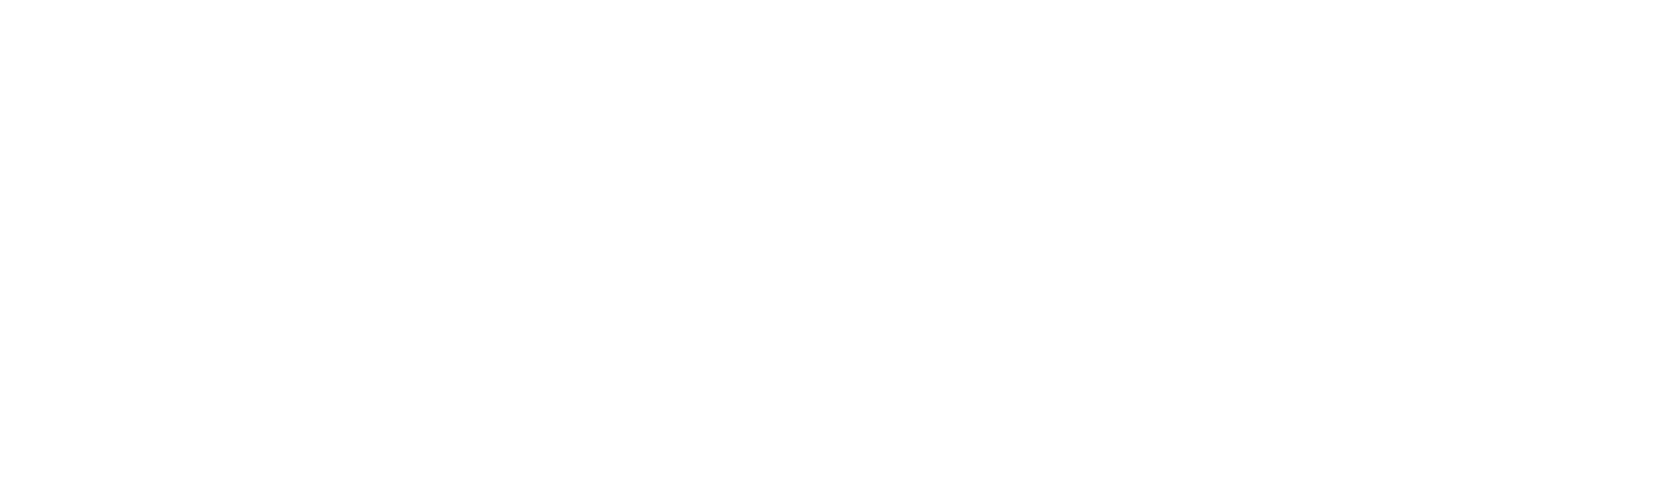 Beiramar Shopping